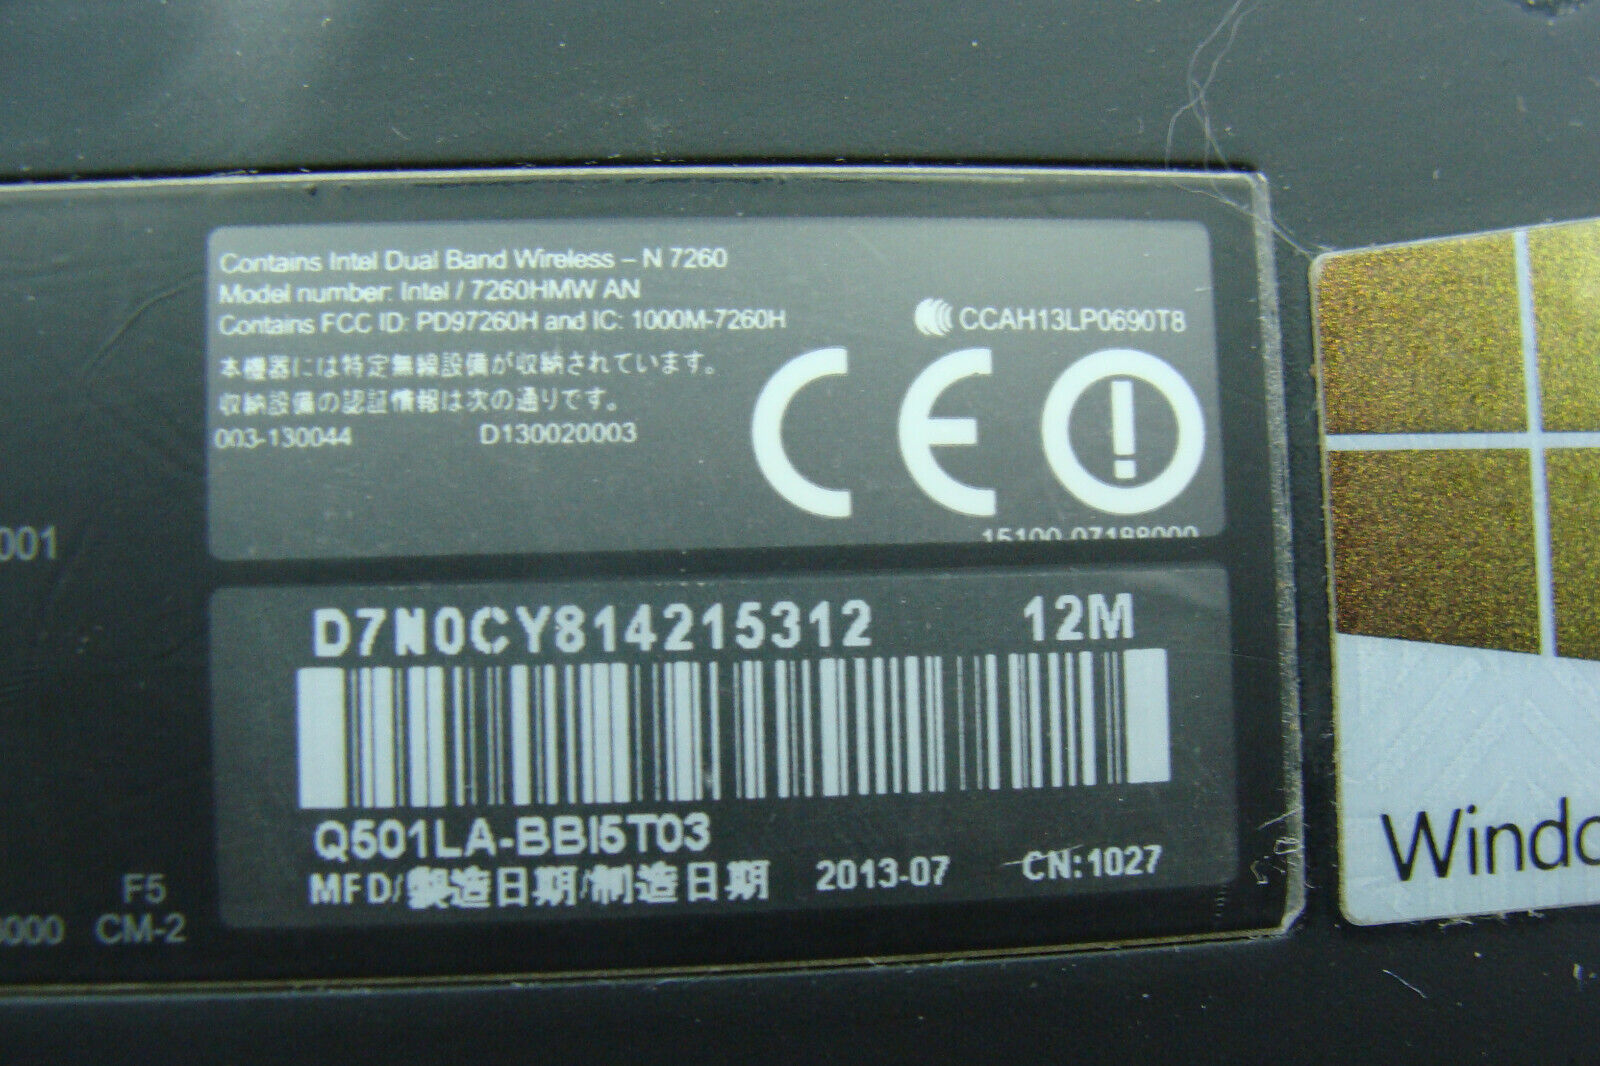 Asus Q501LA-BBI5T03 15.6